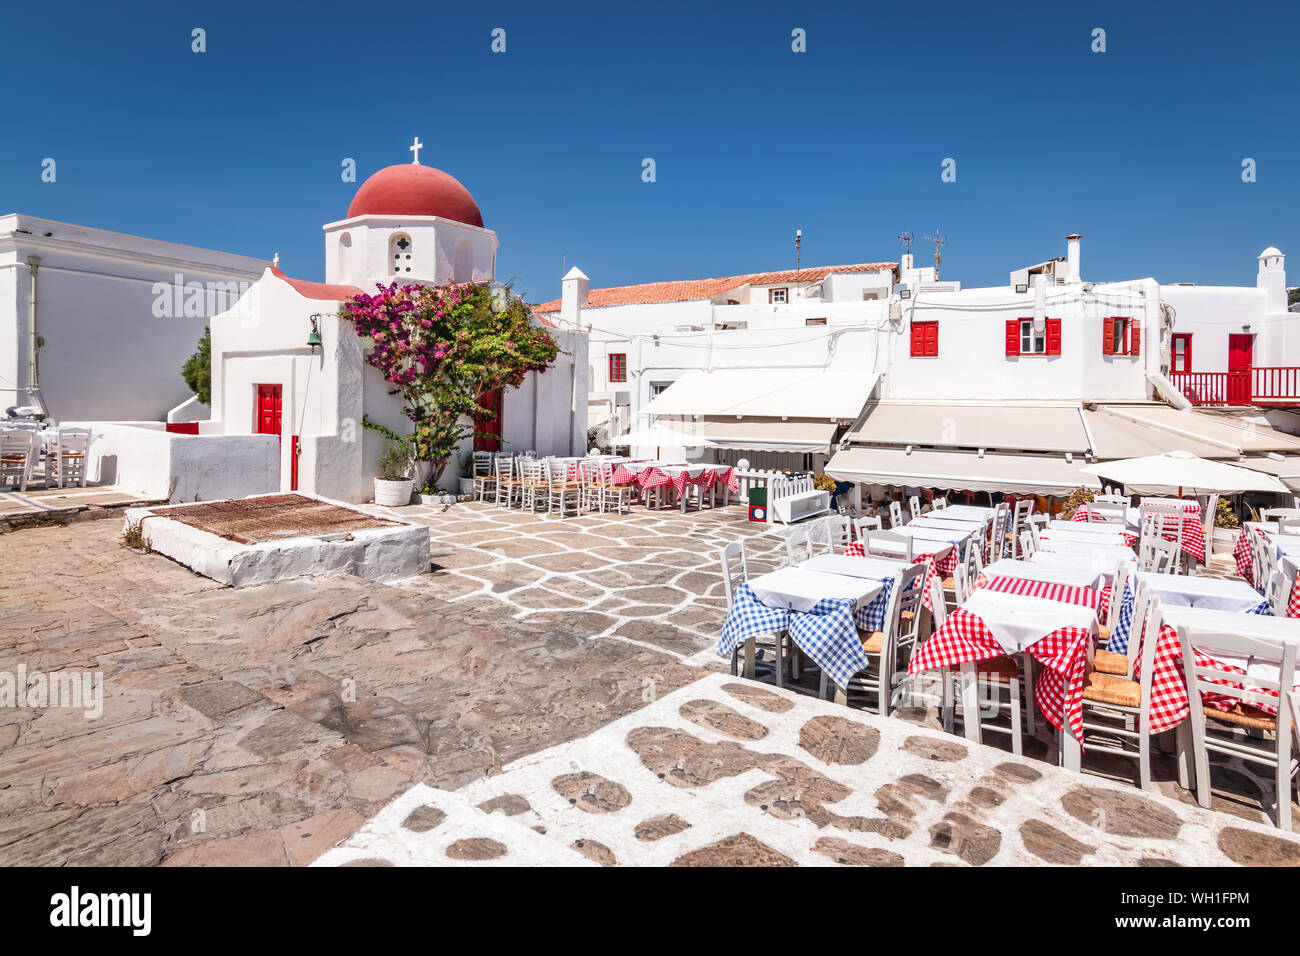 Petite place avec l'église grecque et des restaurants dans la vieille ville de Mykonos, Grèce. Banque D'Images